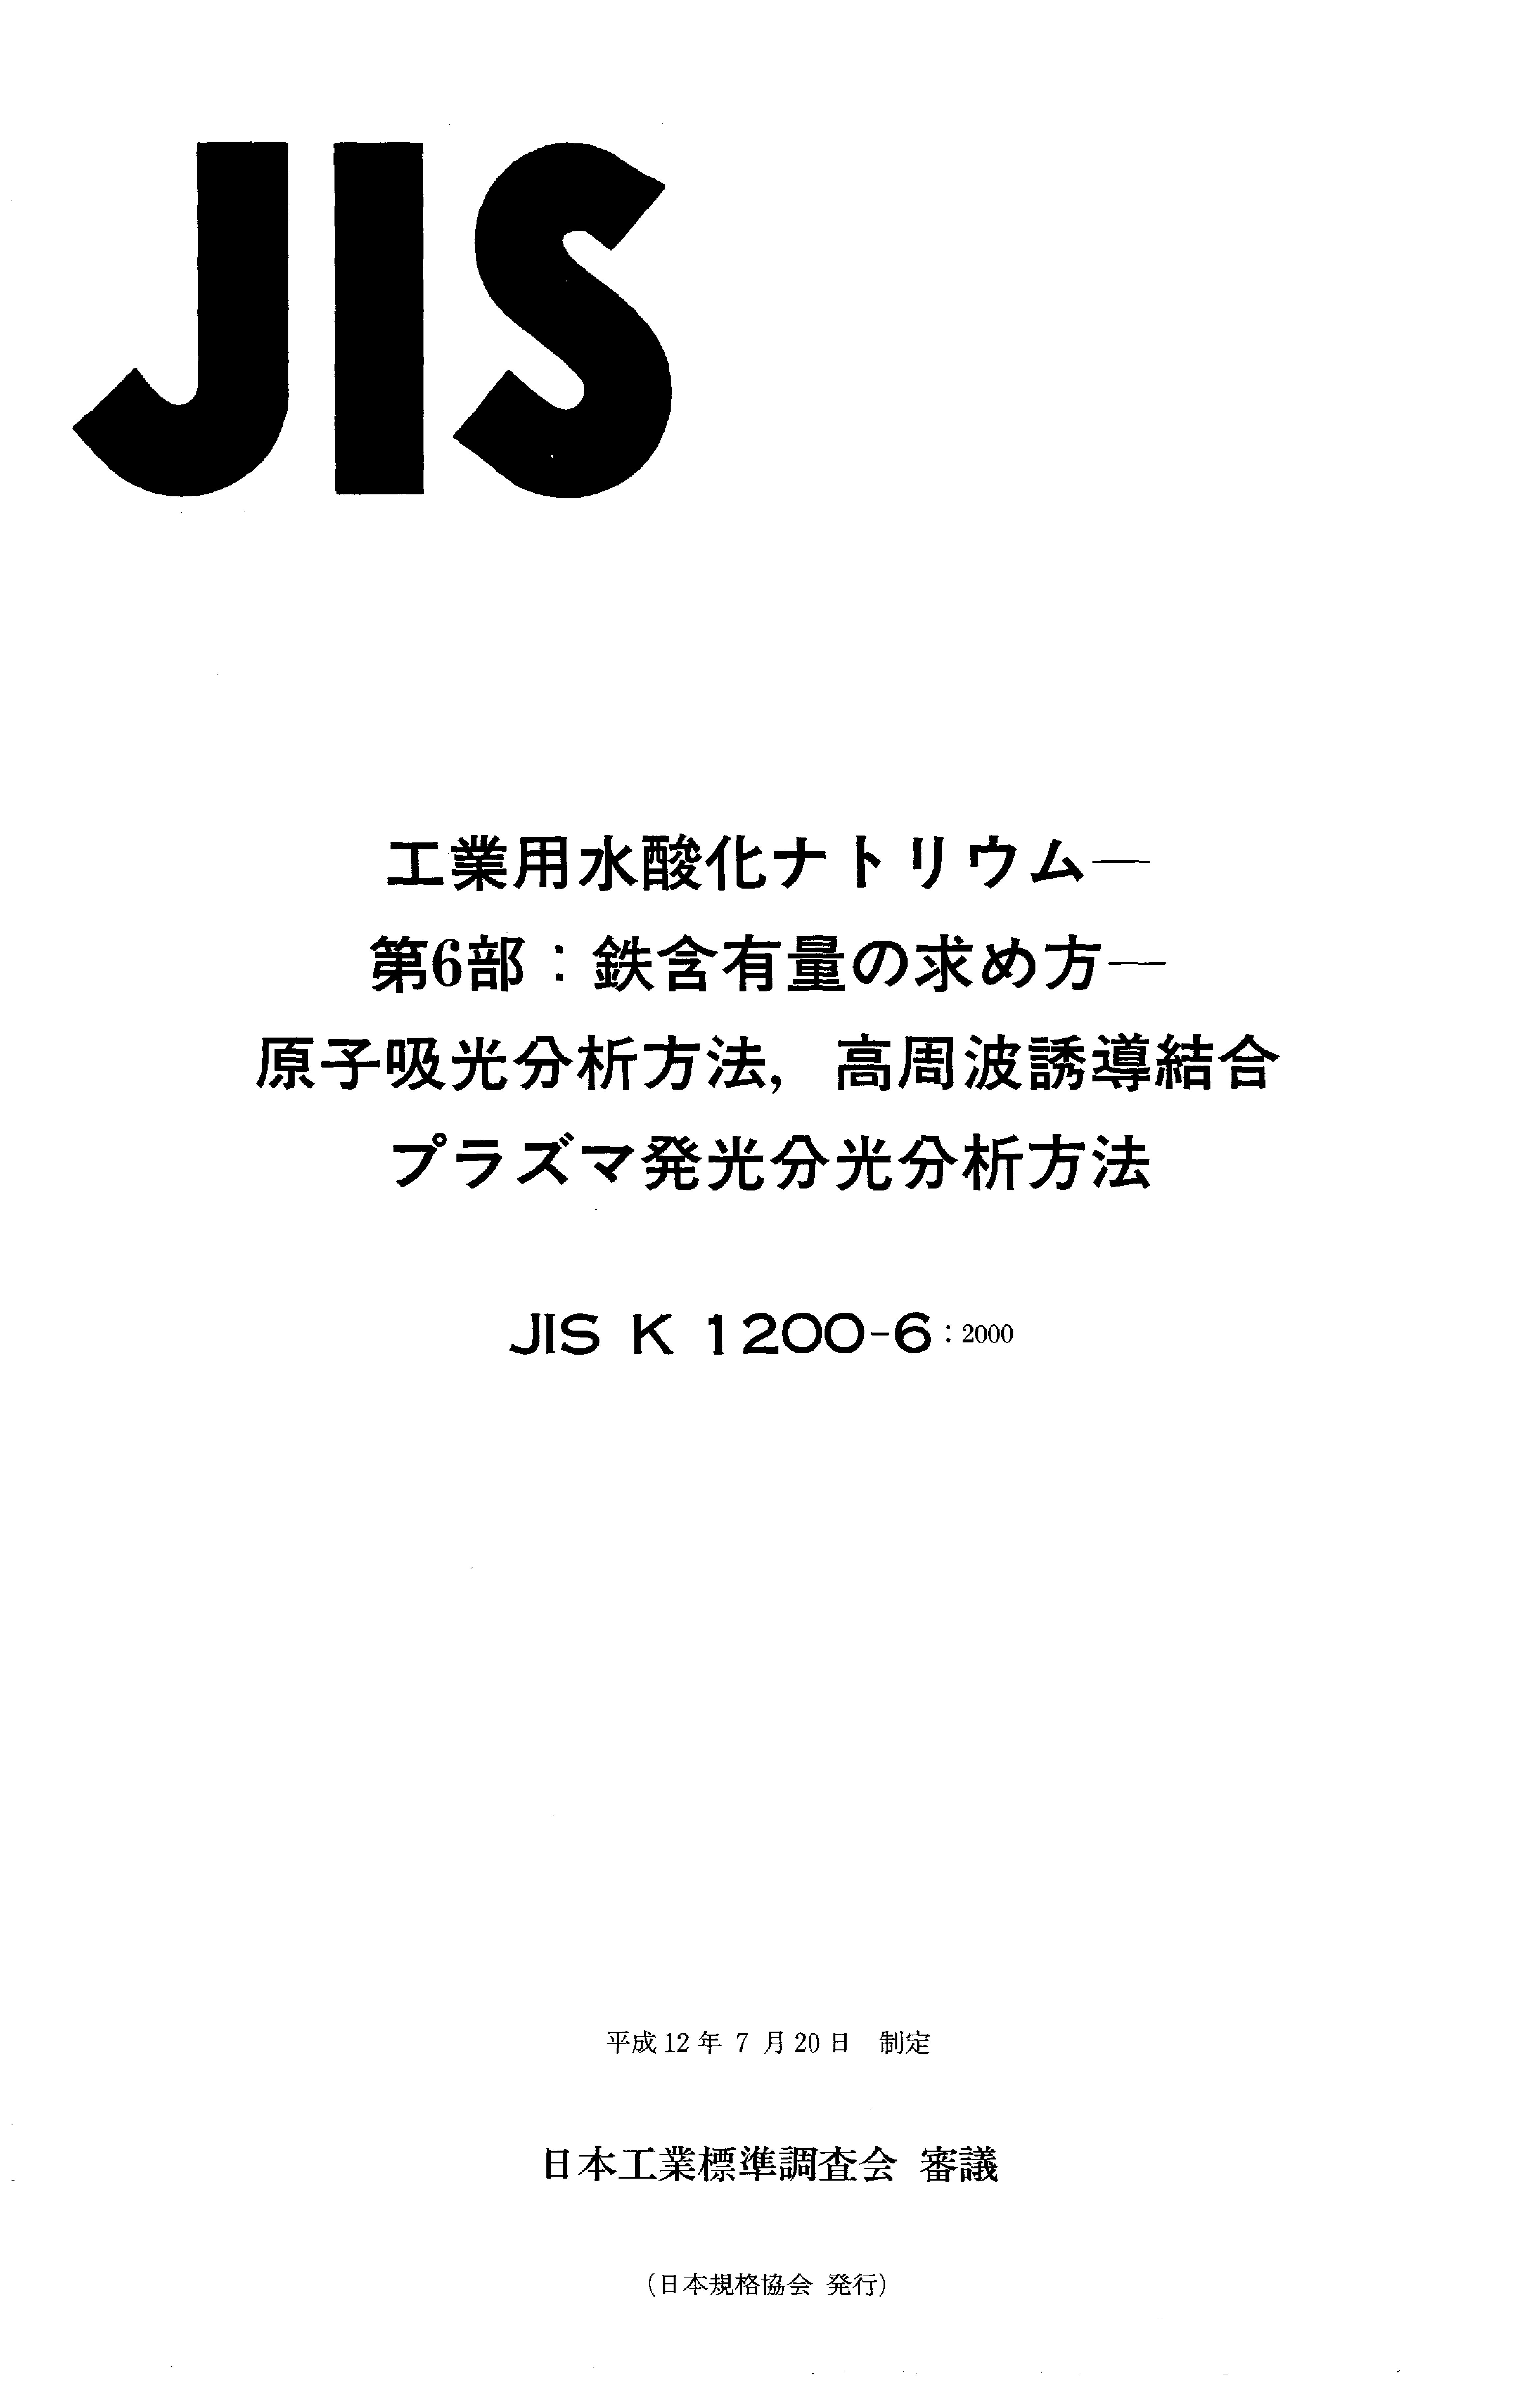 JIS K 1200-6:2000